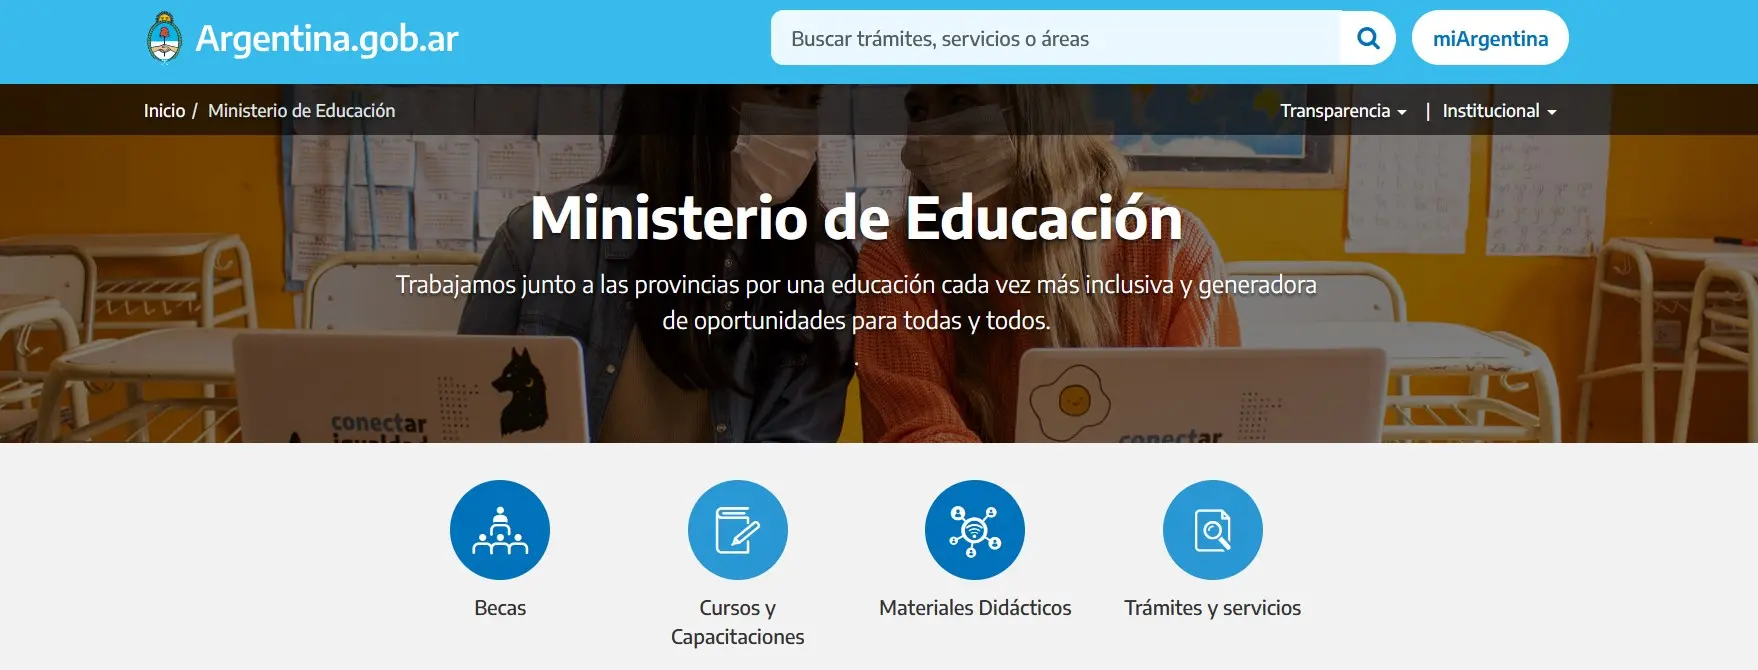 ministerio de educacion argentina